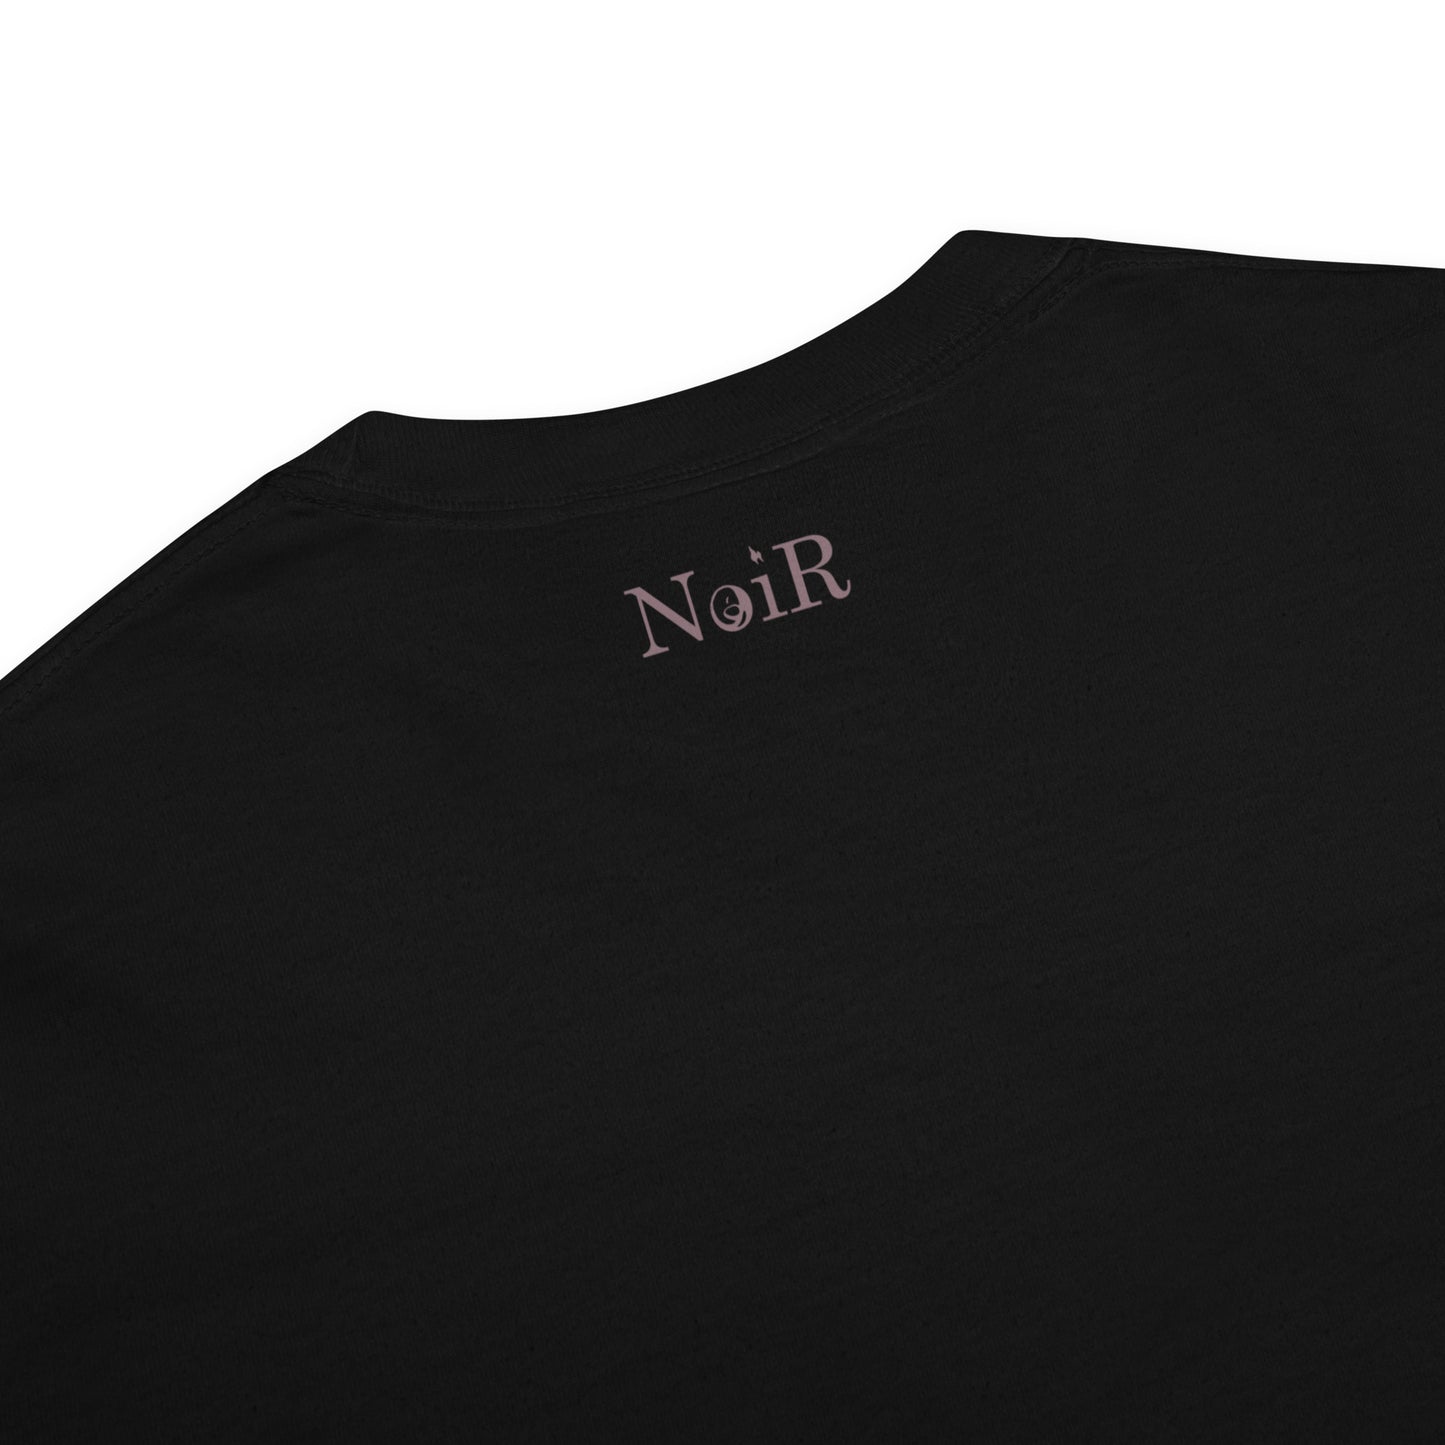 NoiR Original Series 002 "Noa" Premium Heavyweight T-Shirt